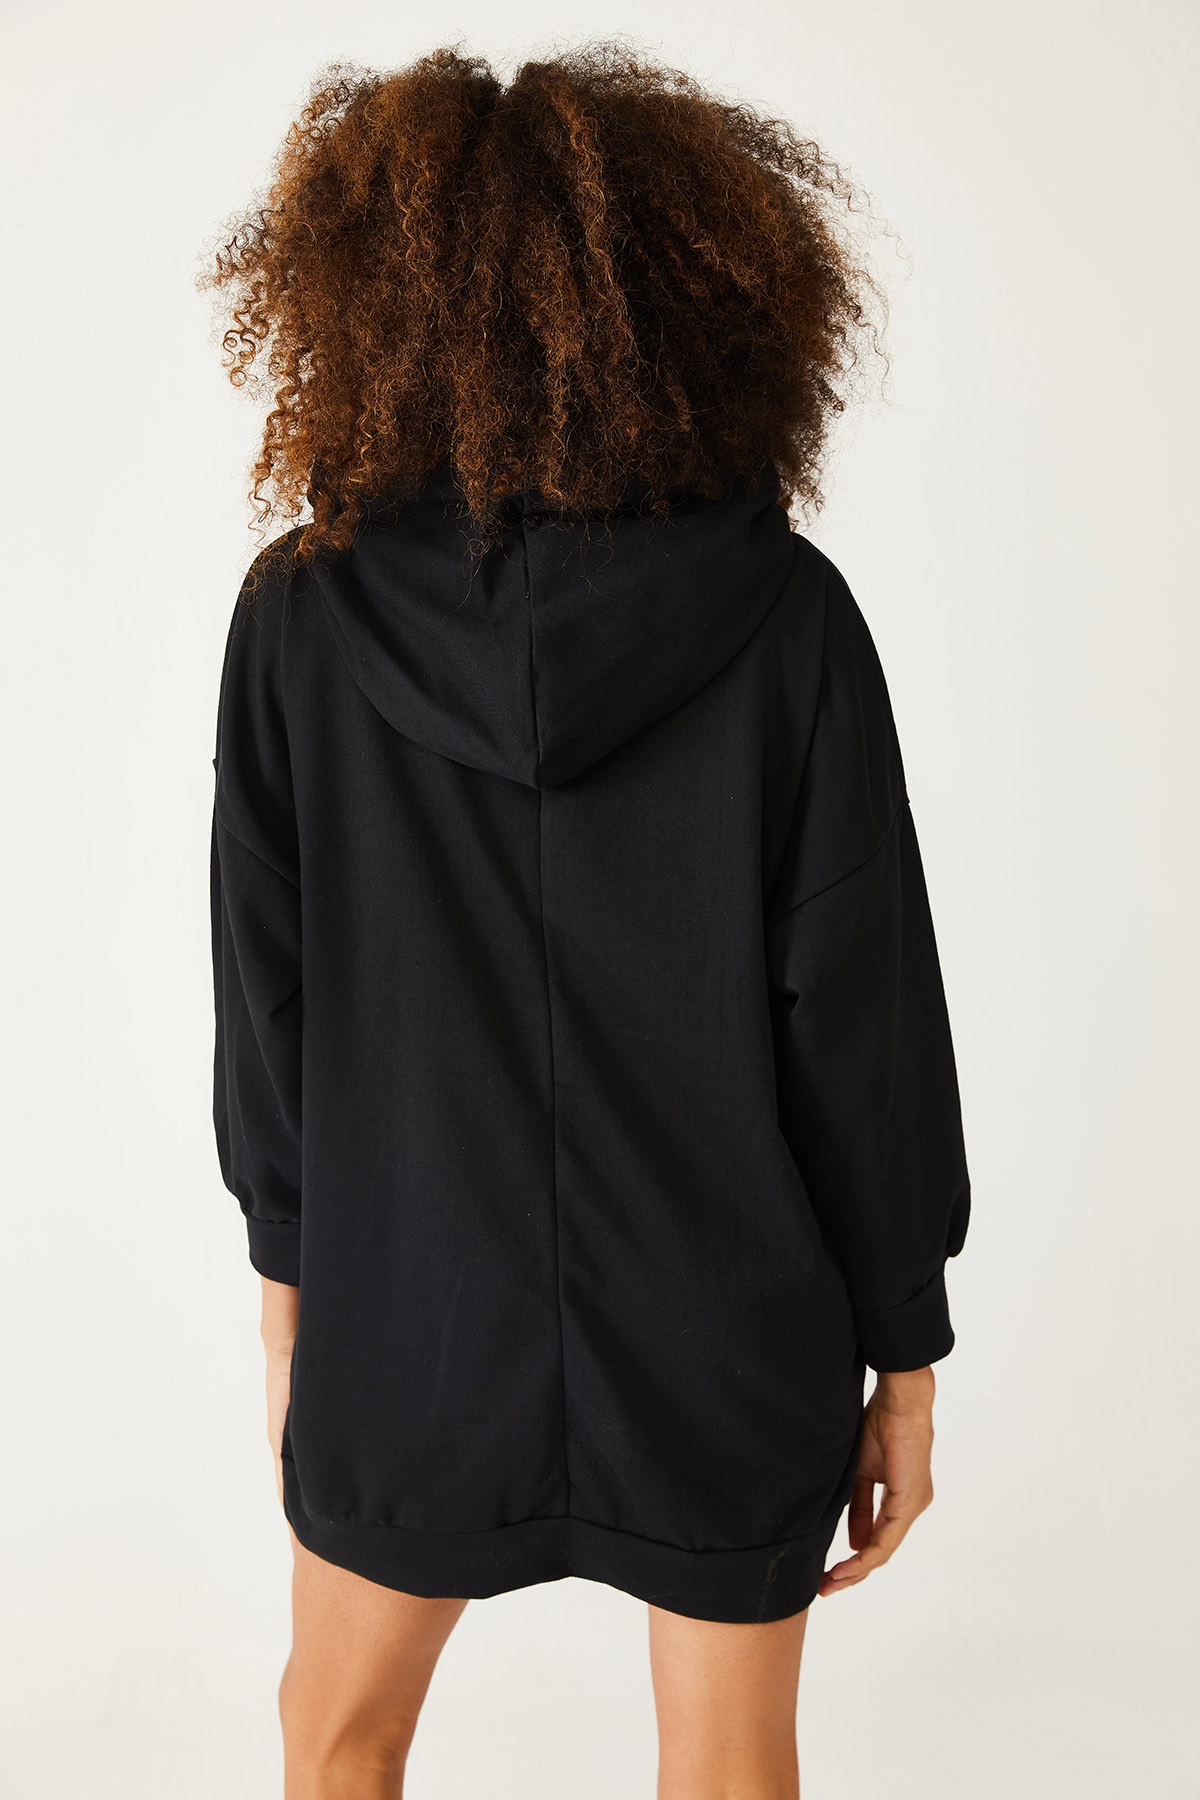 Siyah Baskılı Kapüşonlu Uzun Oversize Sweatshirt 1KXK6-44418-02 - 2